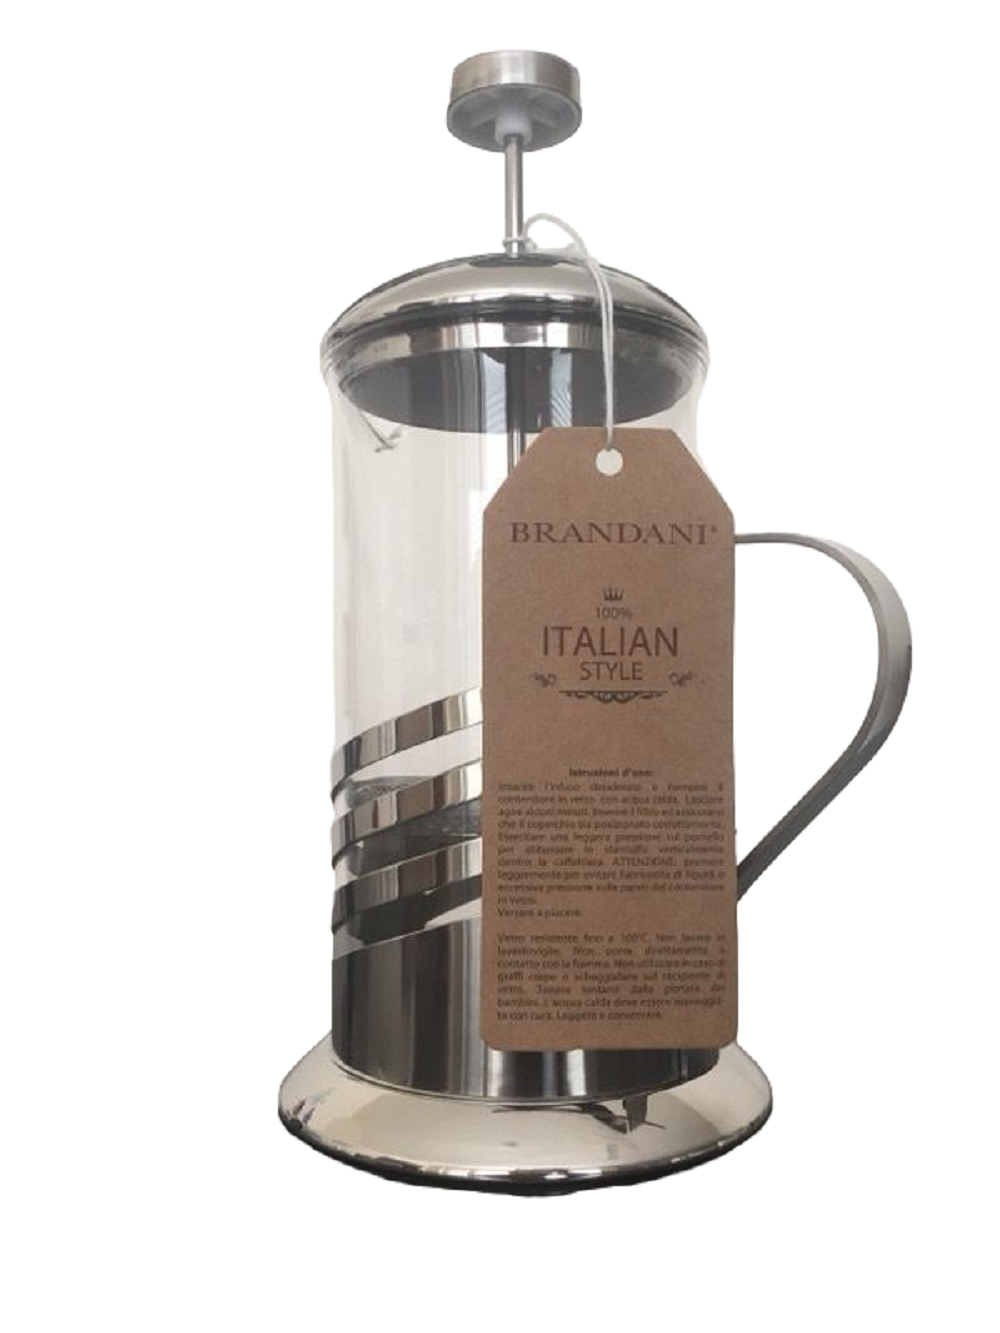 BRANDANI French Press Coffee & Tea Maker 25 oz